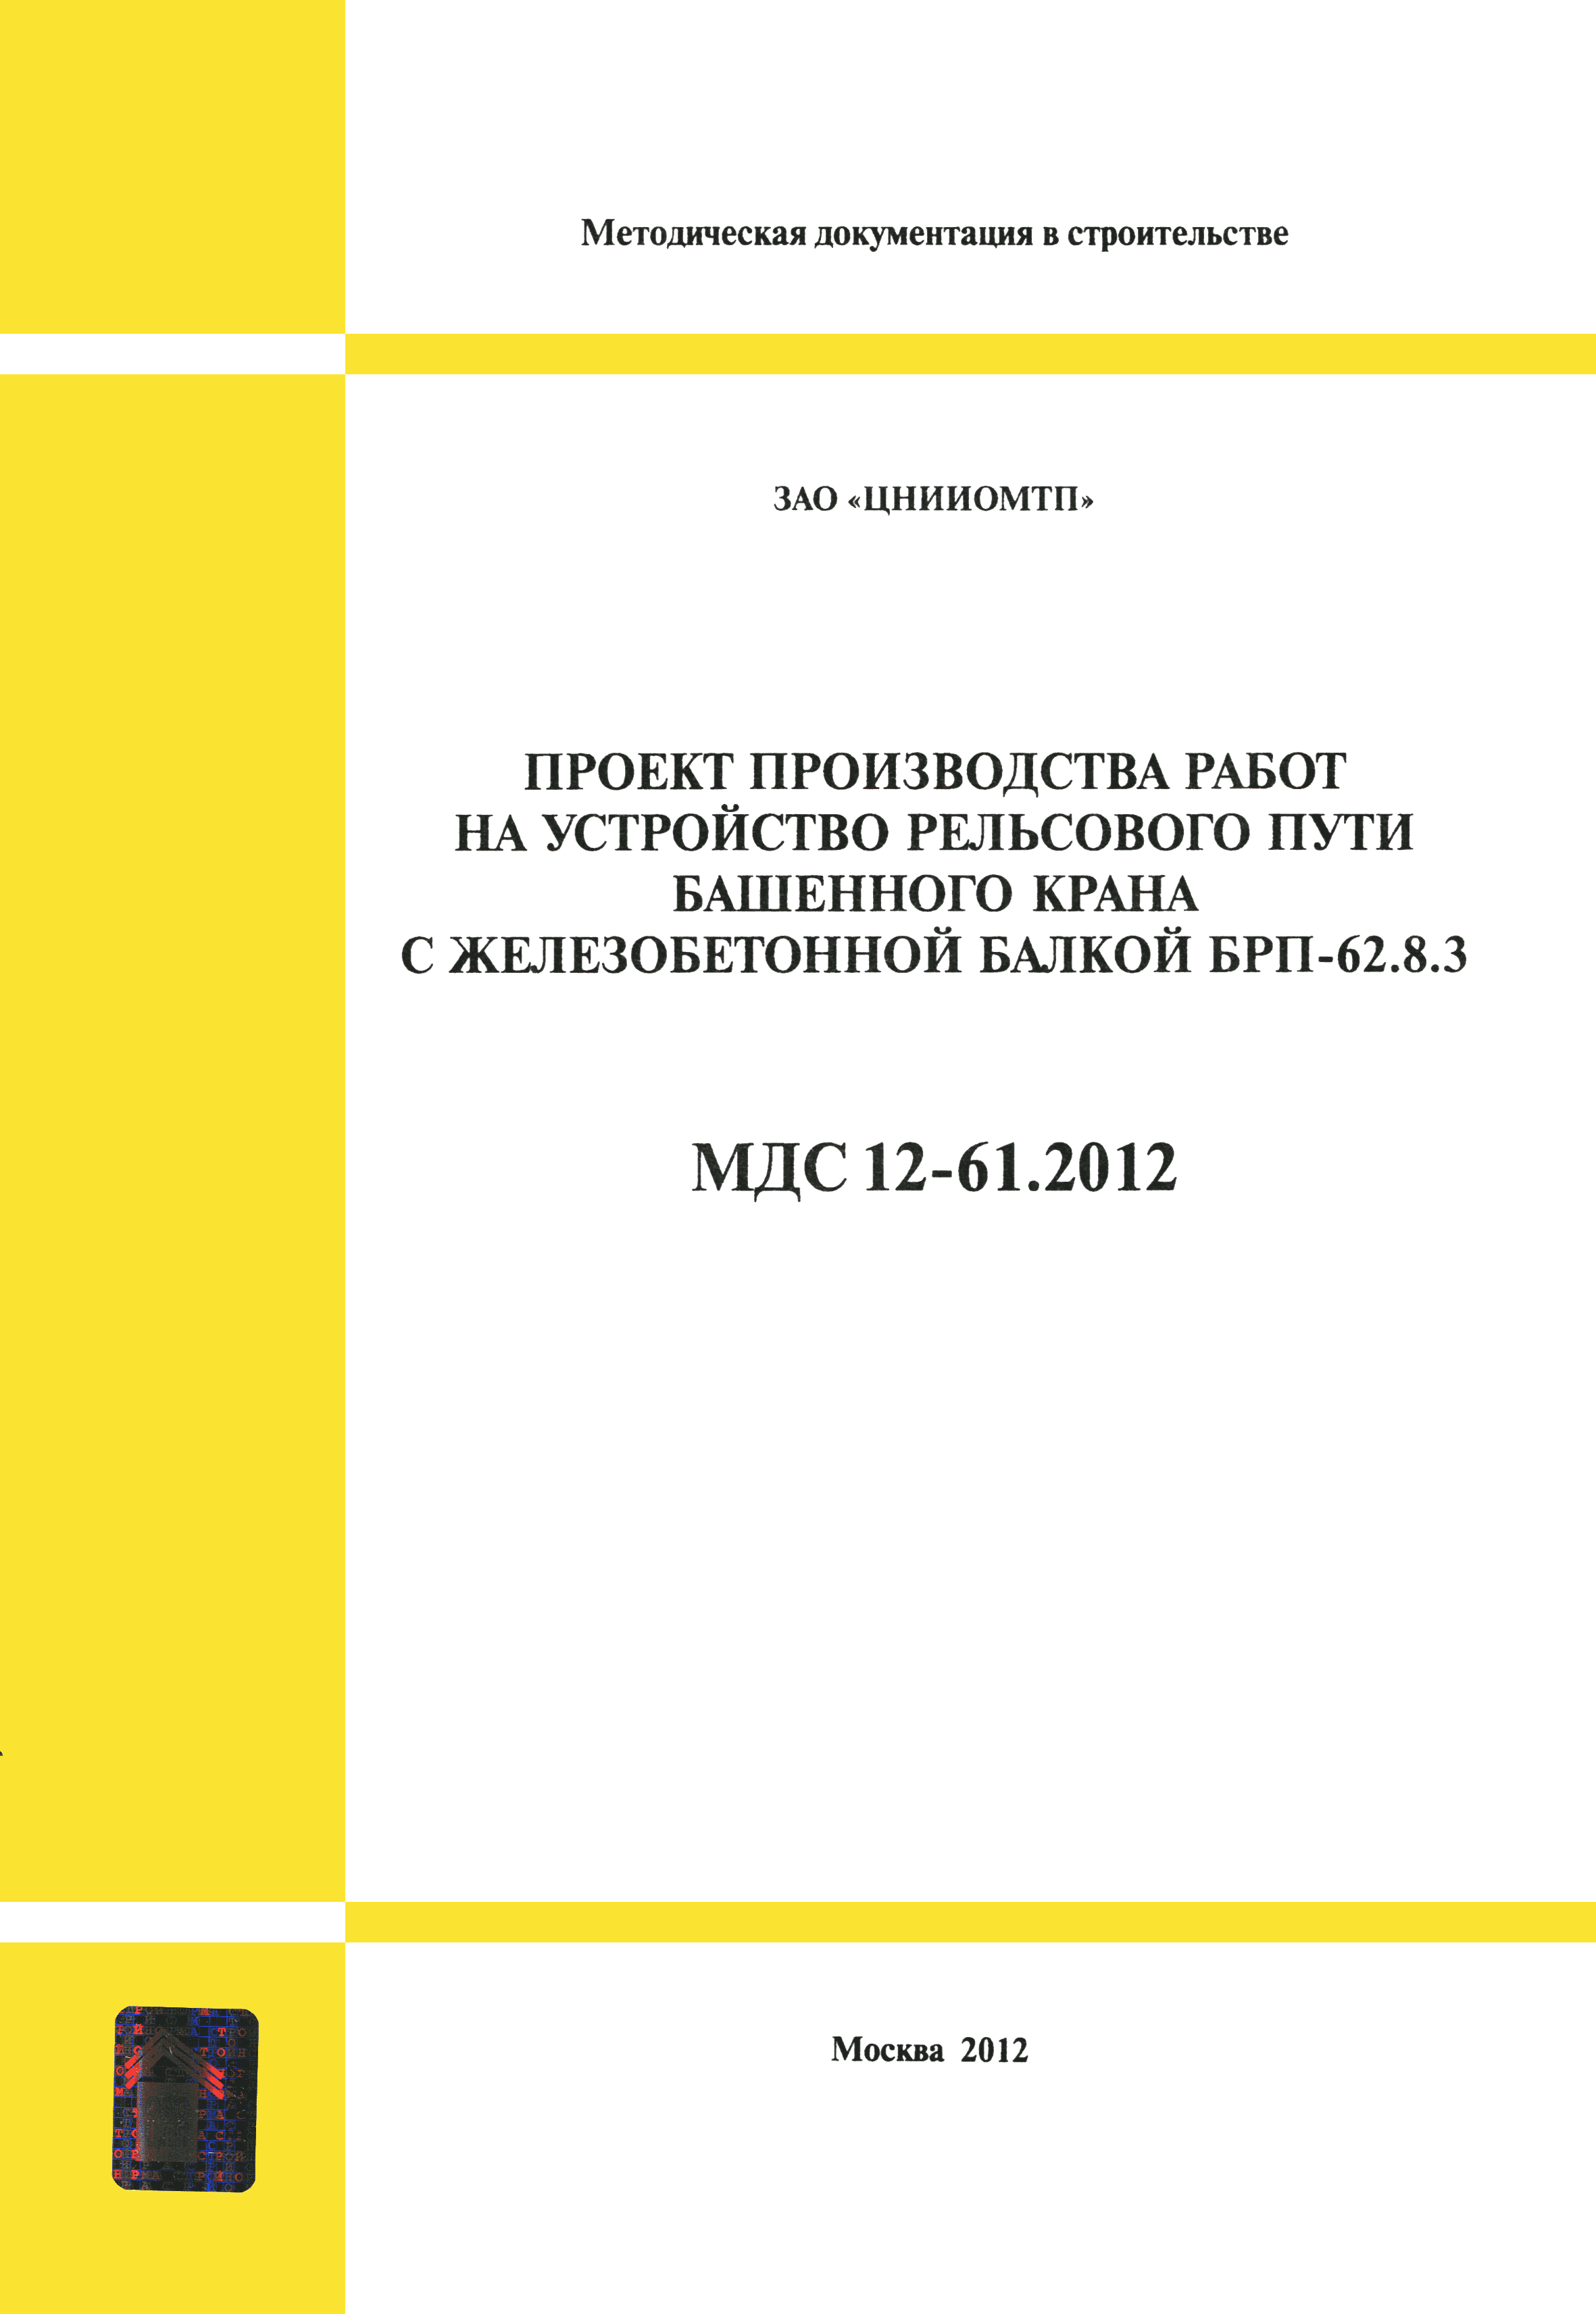 МДС 12-61.2012